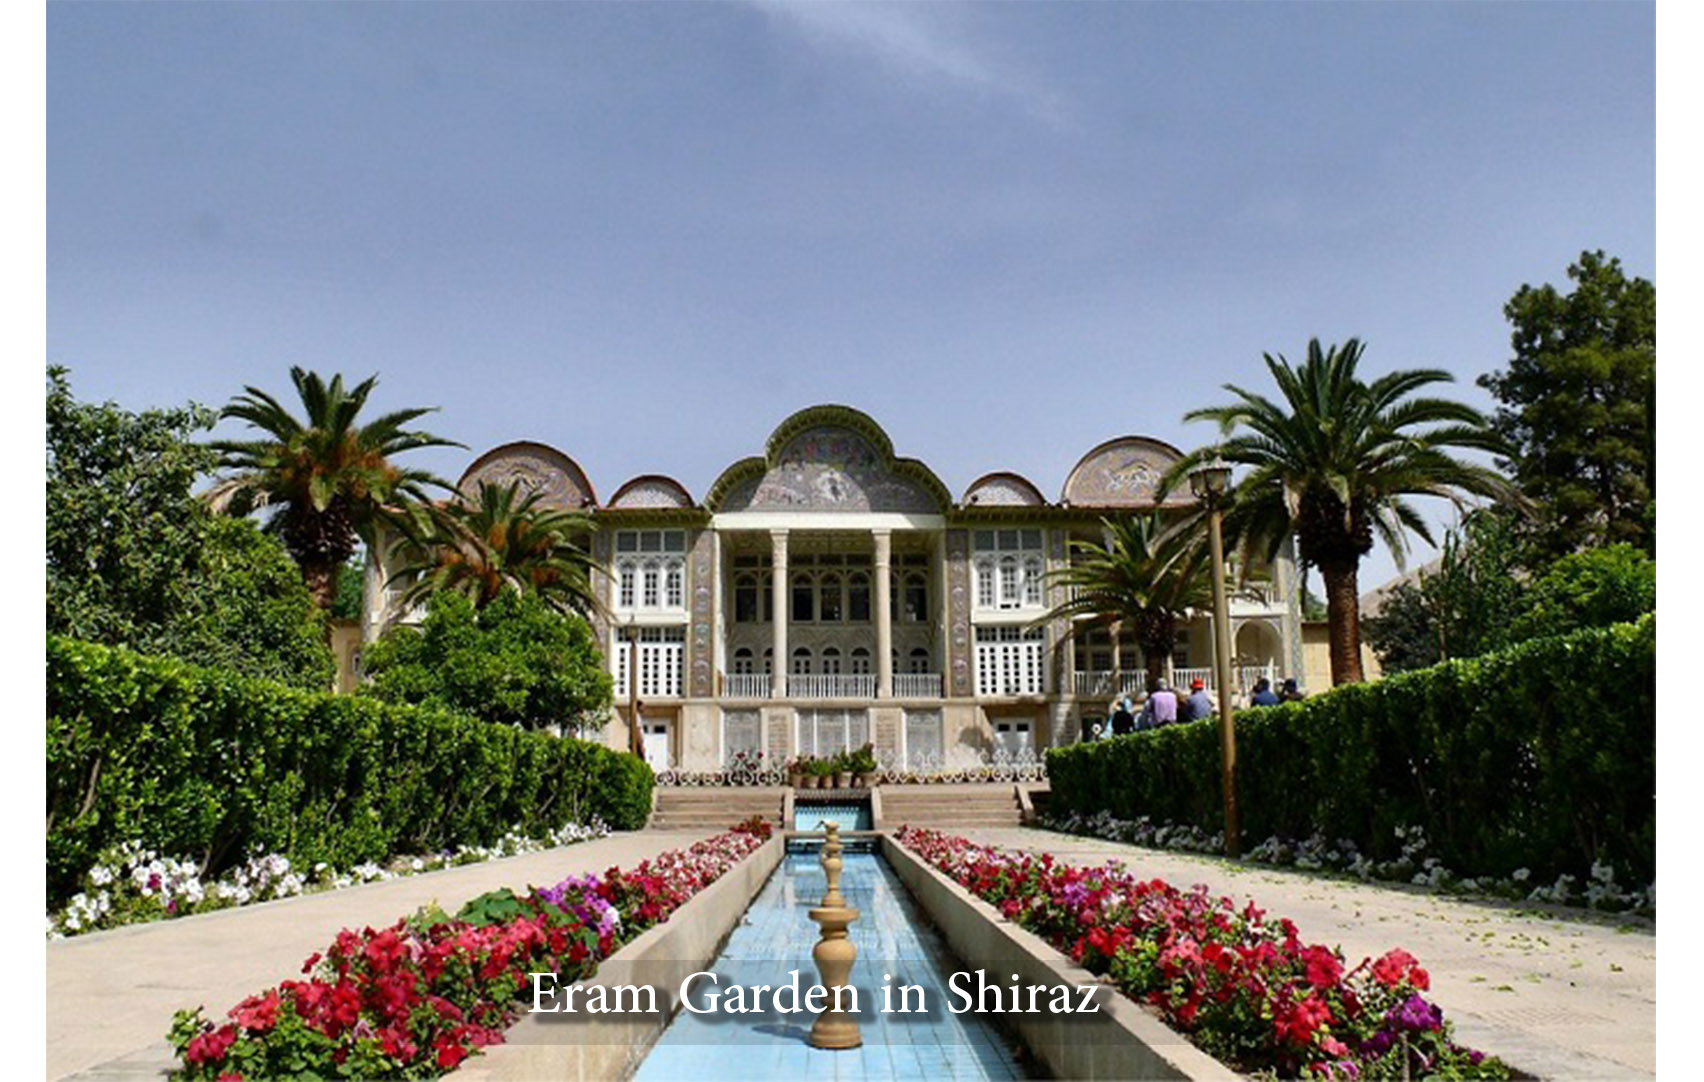 Eram Garden in Shiraz